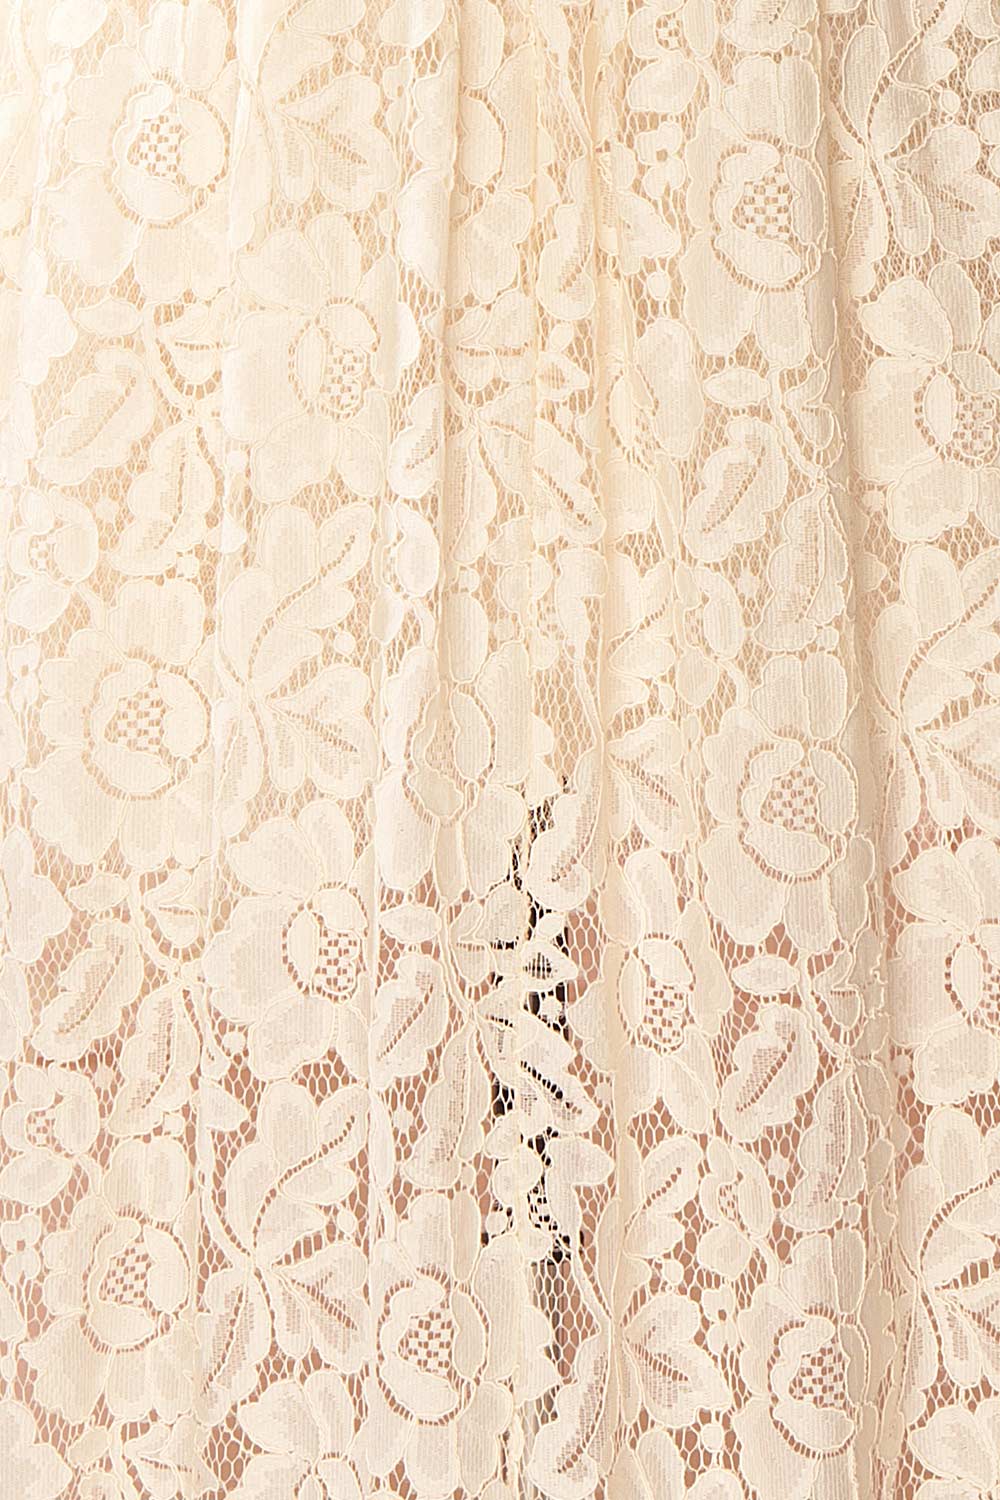 Avelen Cream Hi-Low Bridal Lace Gown | Boudoir 1861